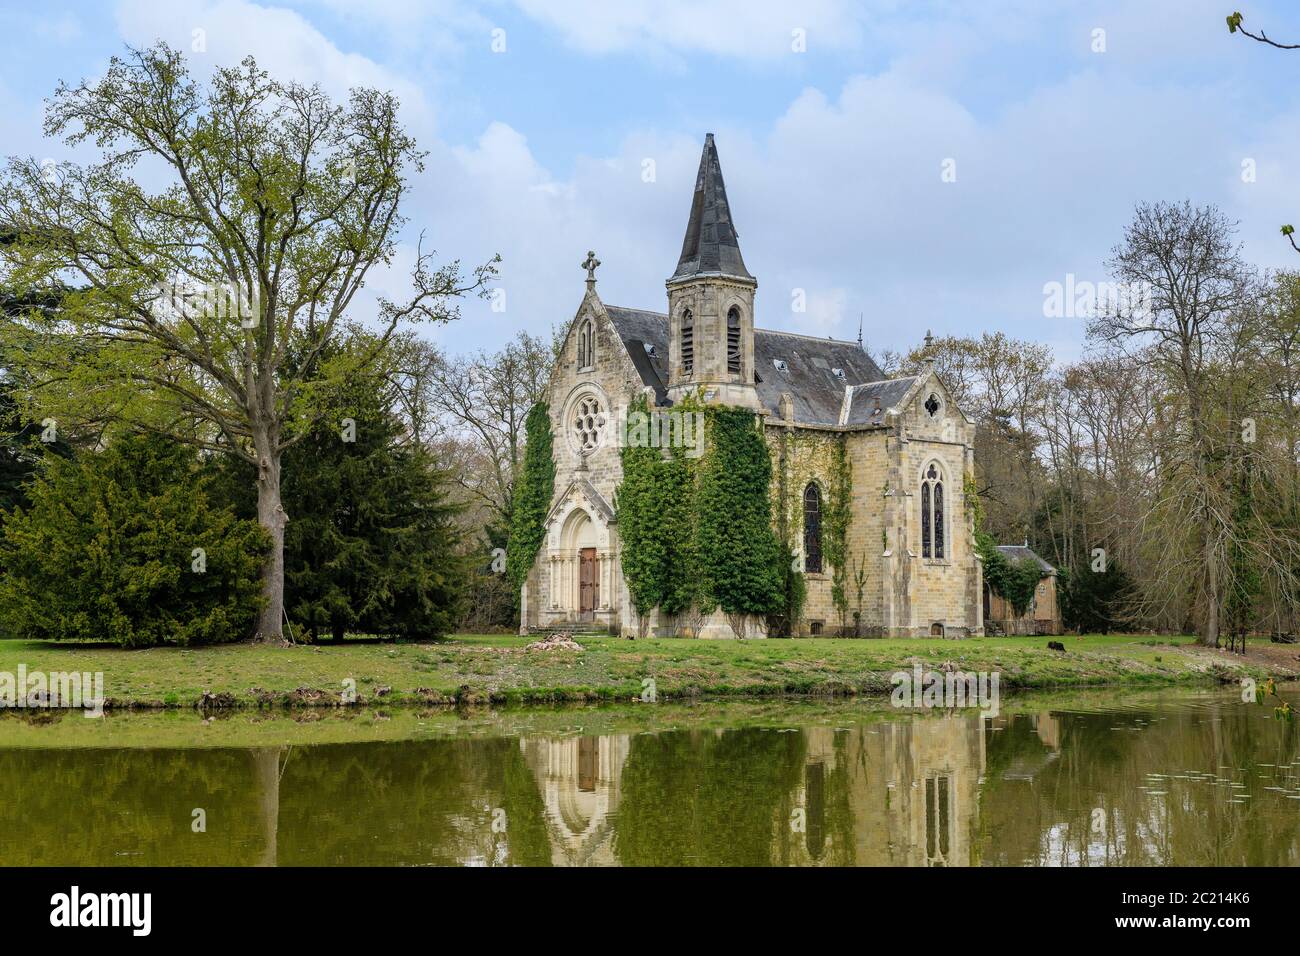 Francia, Loiret, Sologne, la Ferté Saint Aubin, Chateau de la Ferté, cappella del castello // Francia, Loiret (45), Sologne, la Ferté-Saint-Aubin, châtea Foto Stock